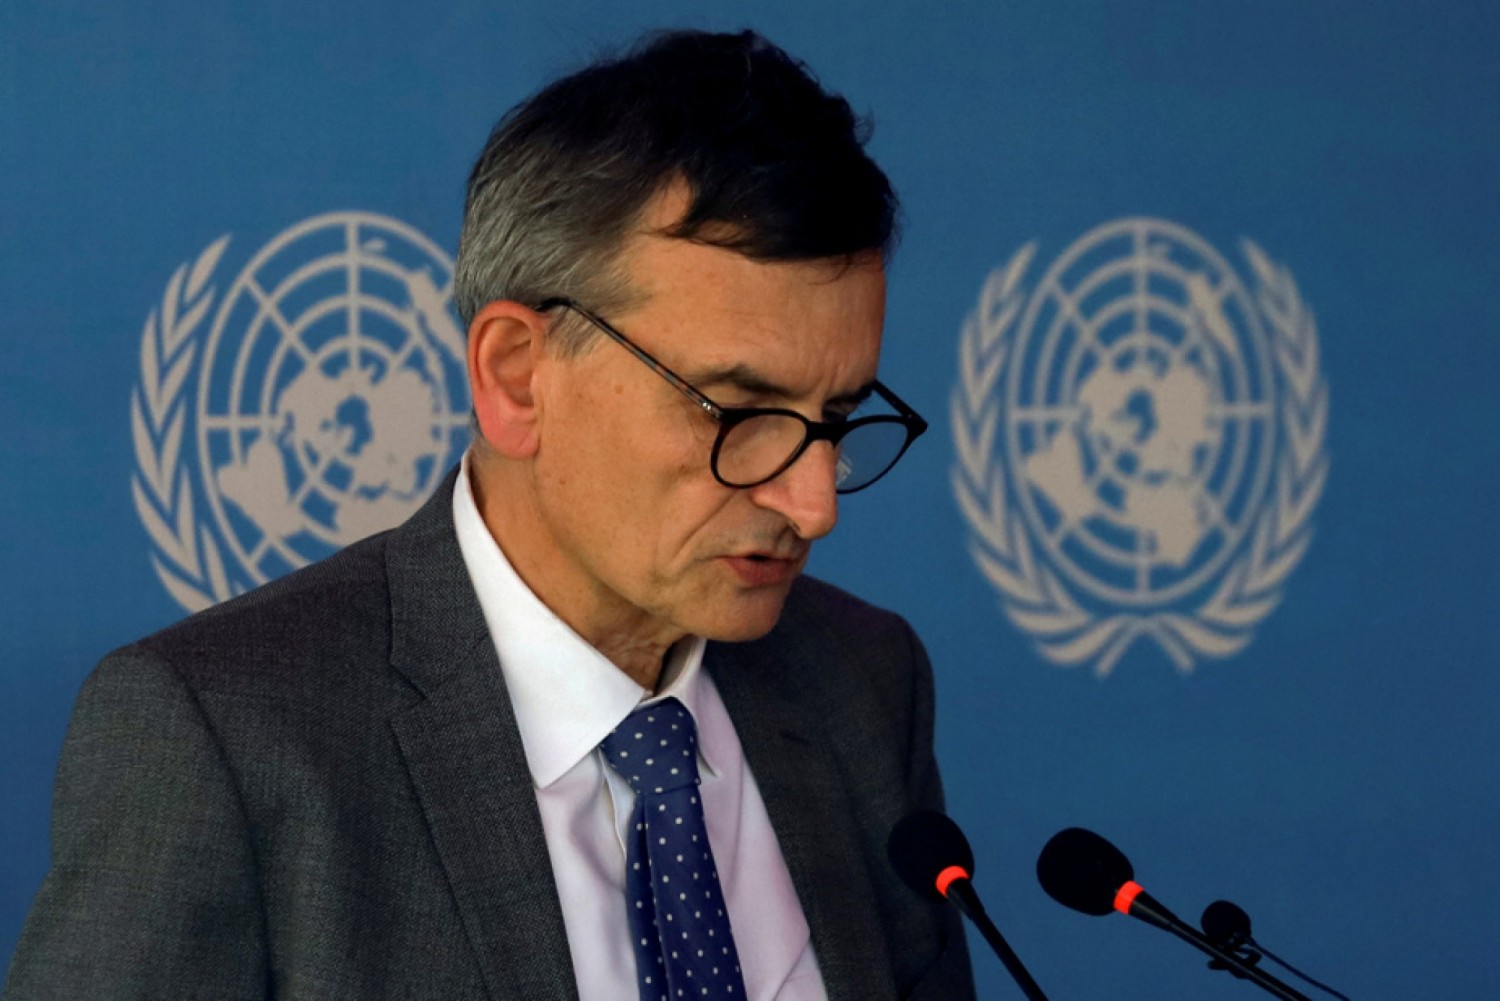 Soudan : L'émissaire de l'ONU Volker Perthes rend son tablier